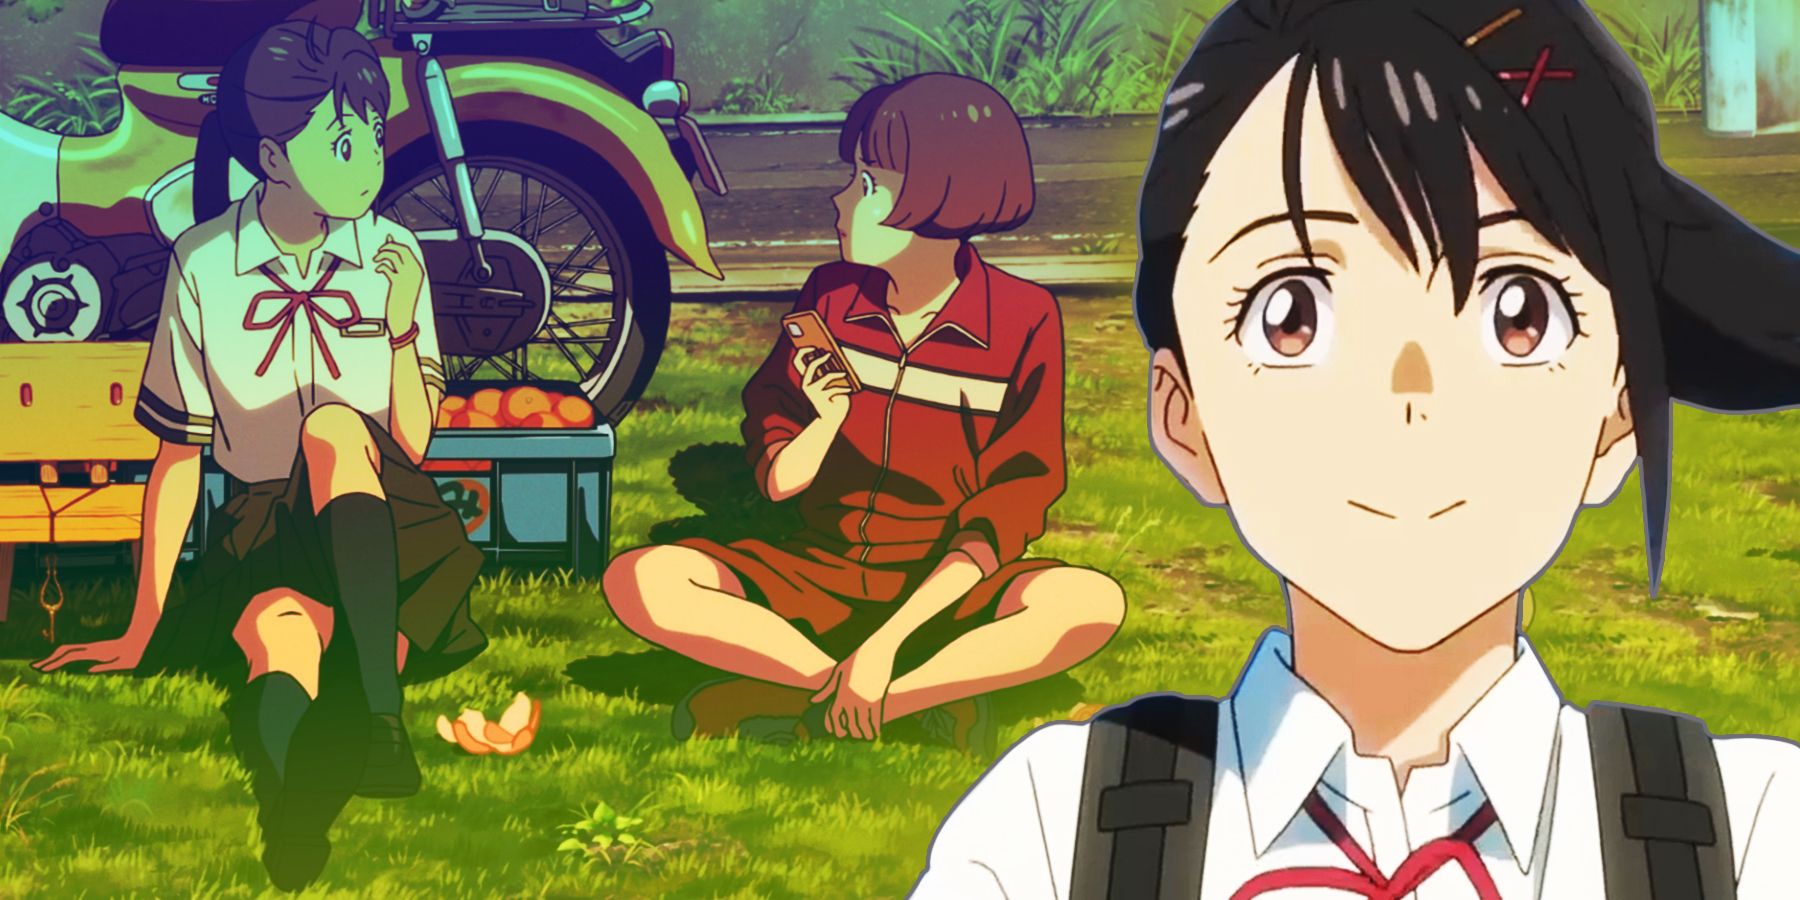 Suzume and Chika from Makoto Shinkai's newest film 